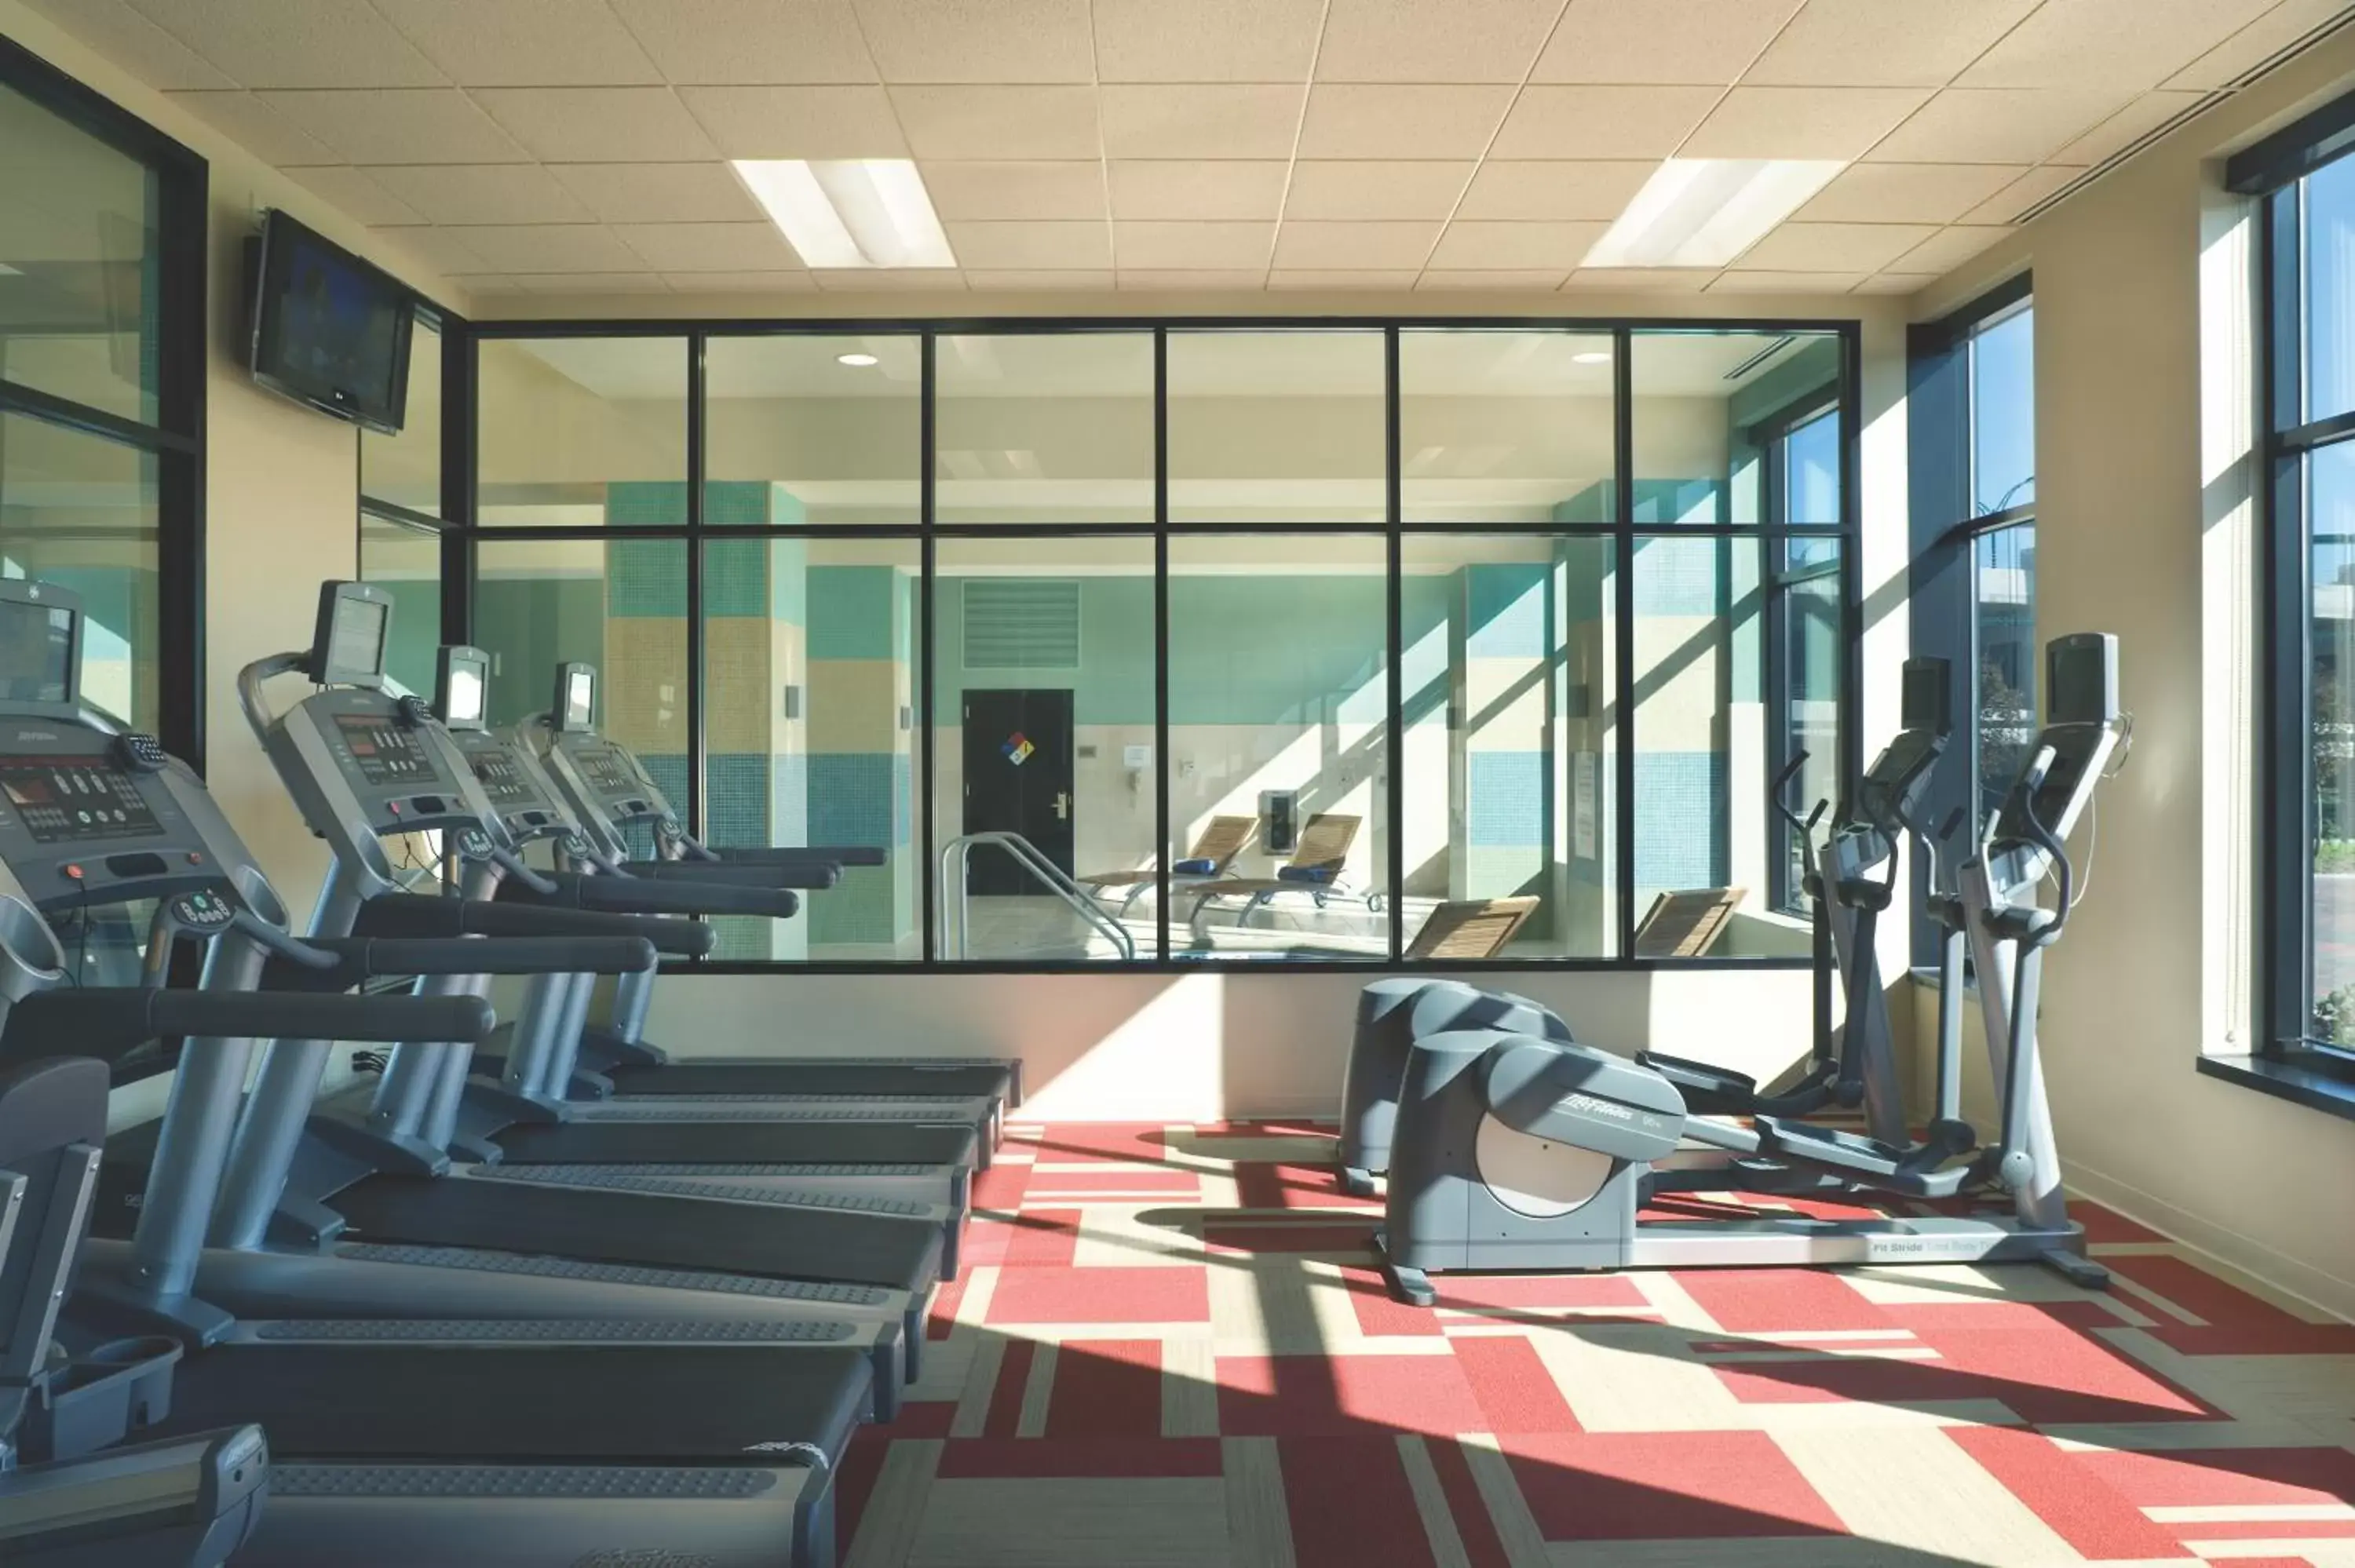 Fitness centre/facilities, Fitness Center/Facilities in Hyatt Regency Coralville